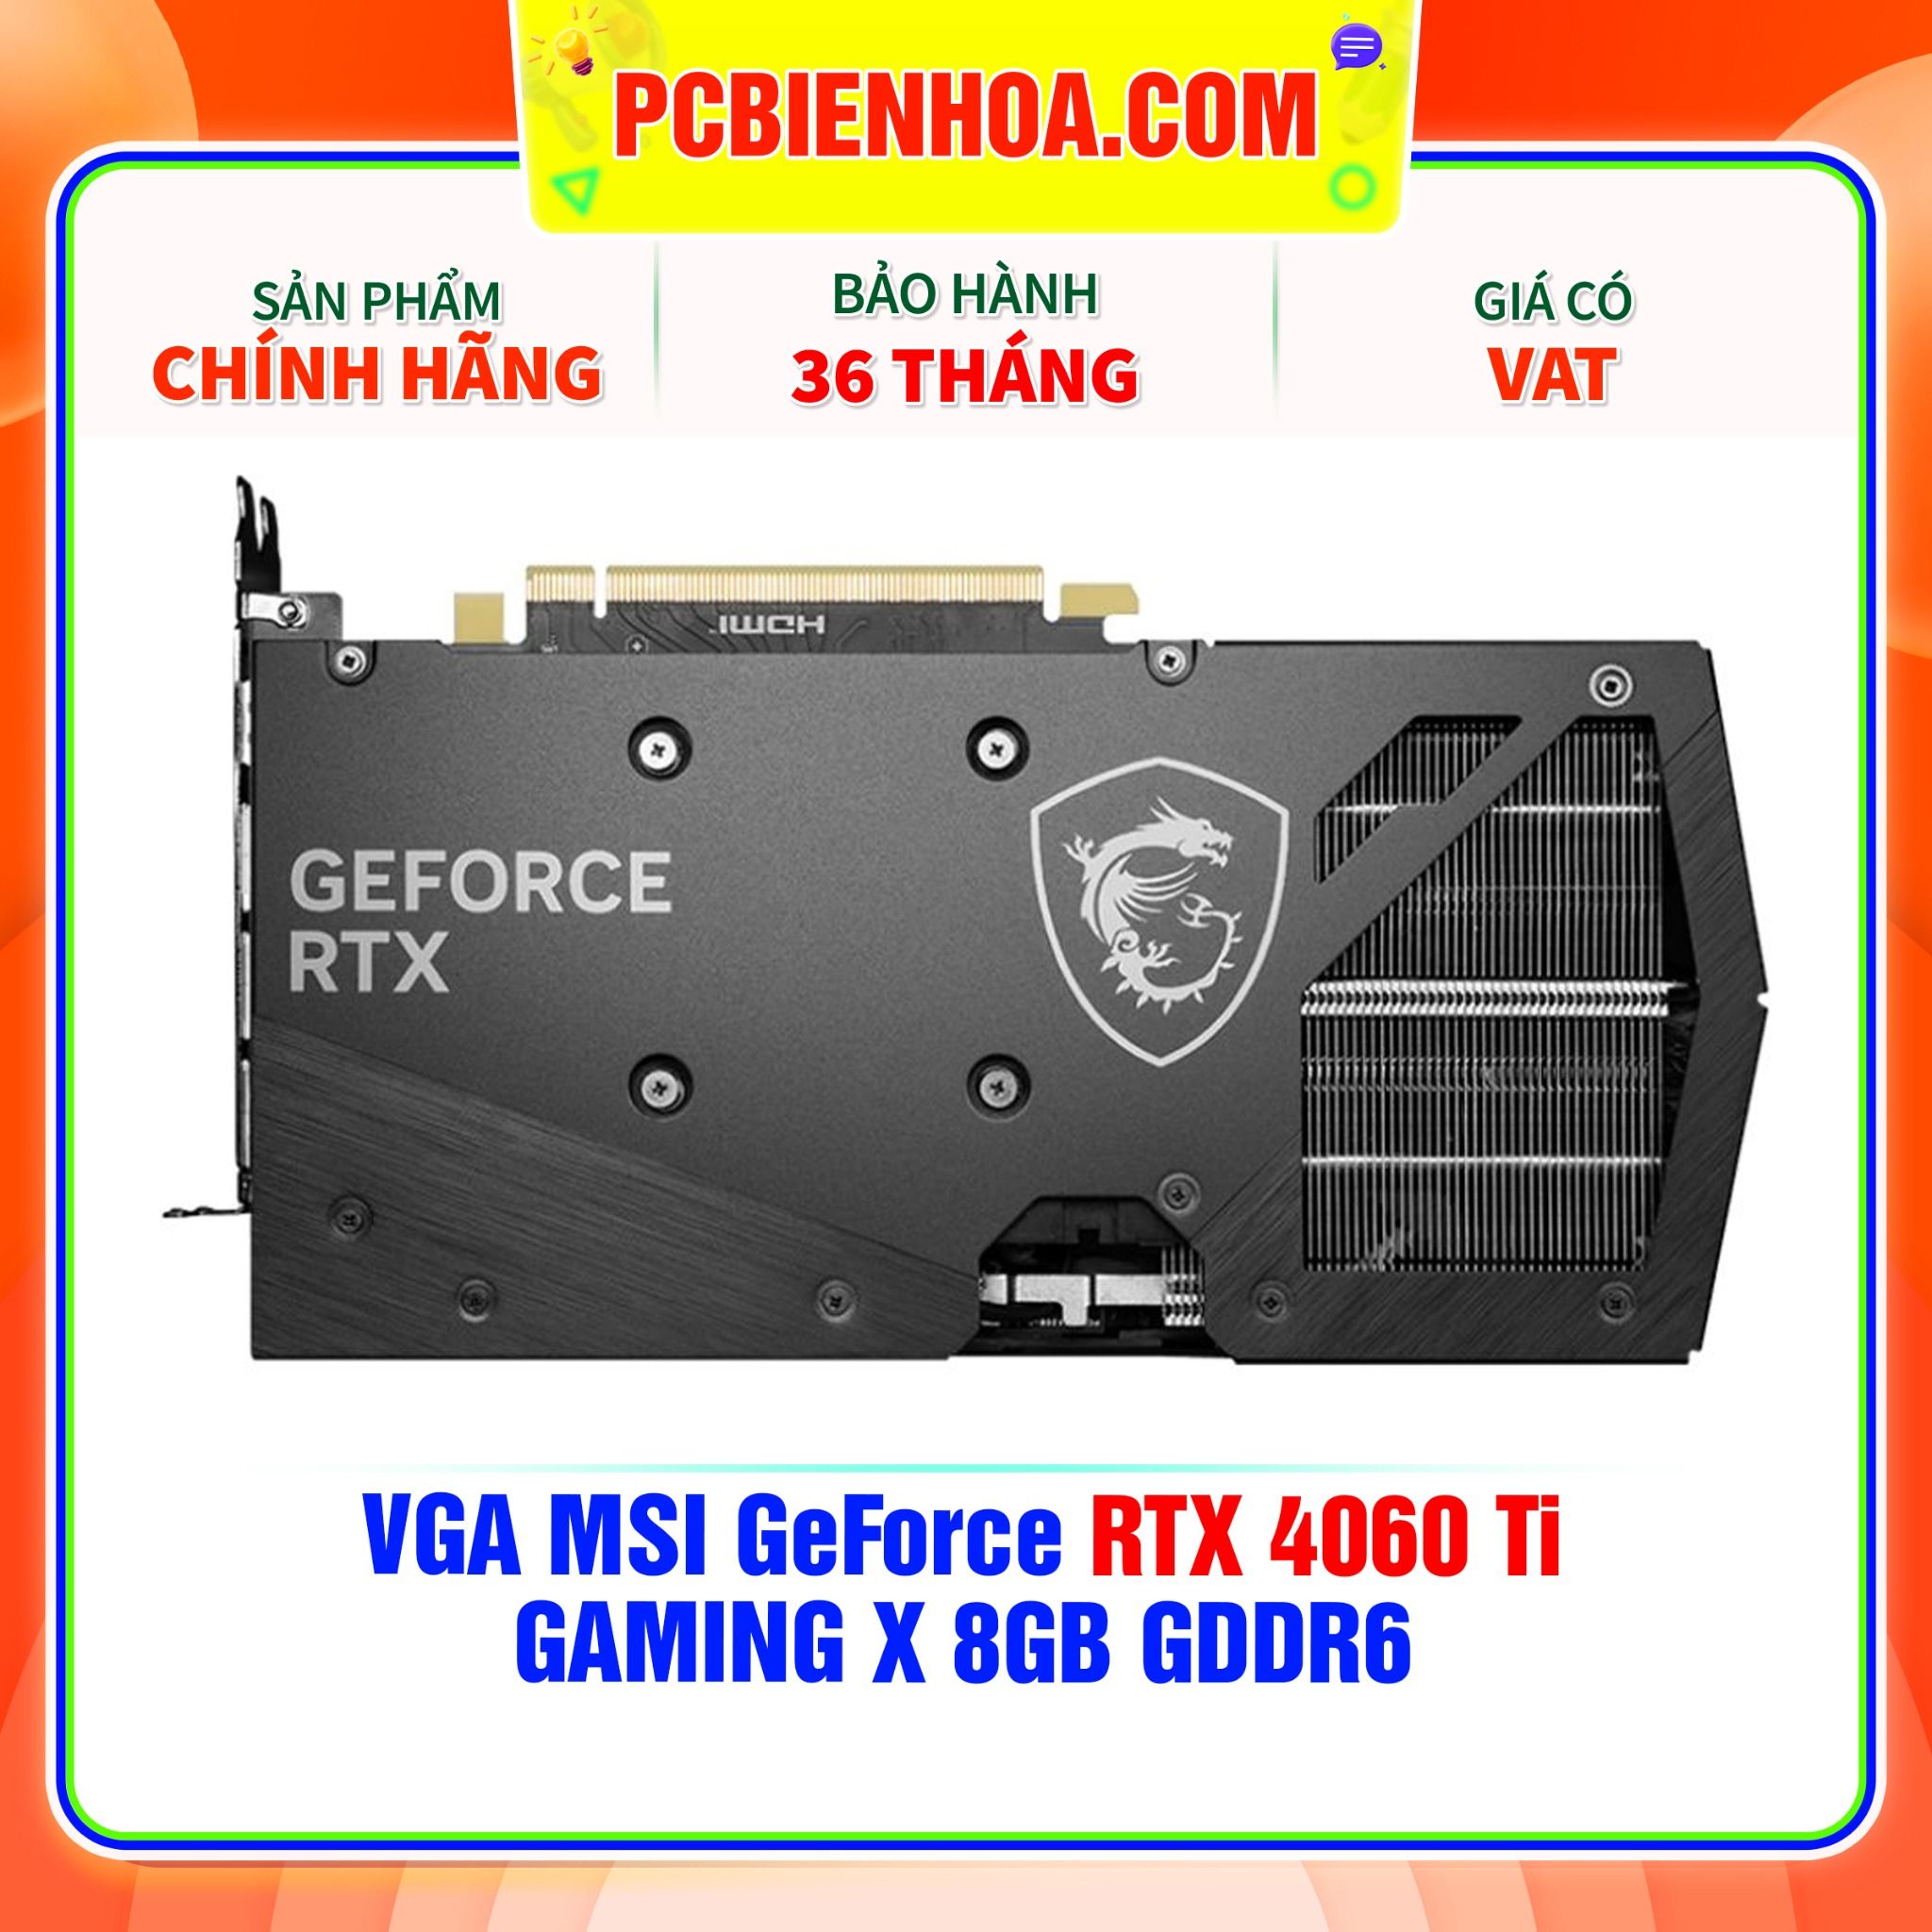  VGA MSI GeForce RTX 4060 Ti GAMING X 8GB GDDR6 